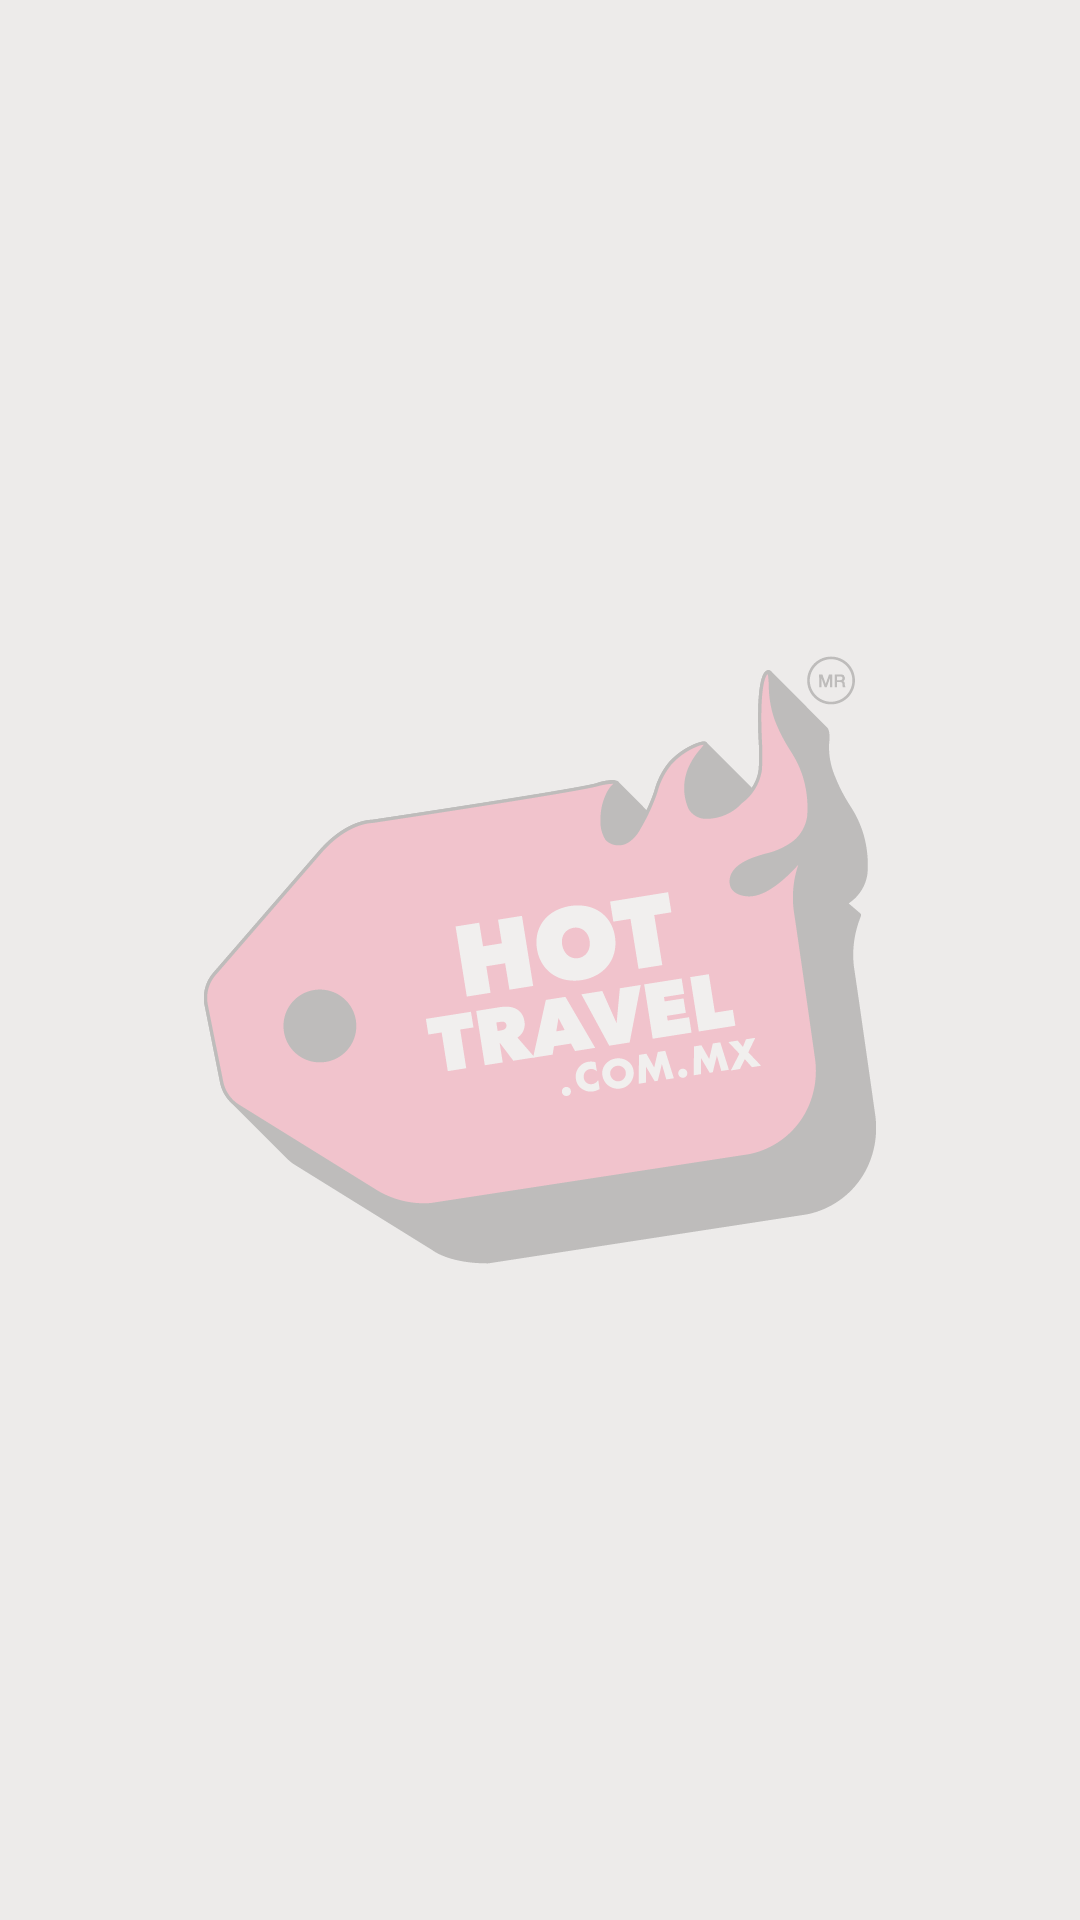 HOT TRAVEL PriceTravel